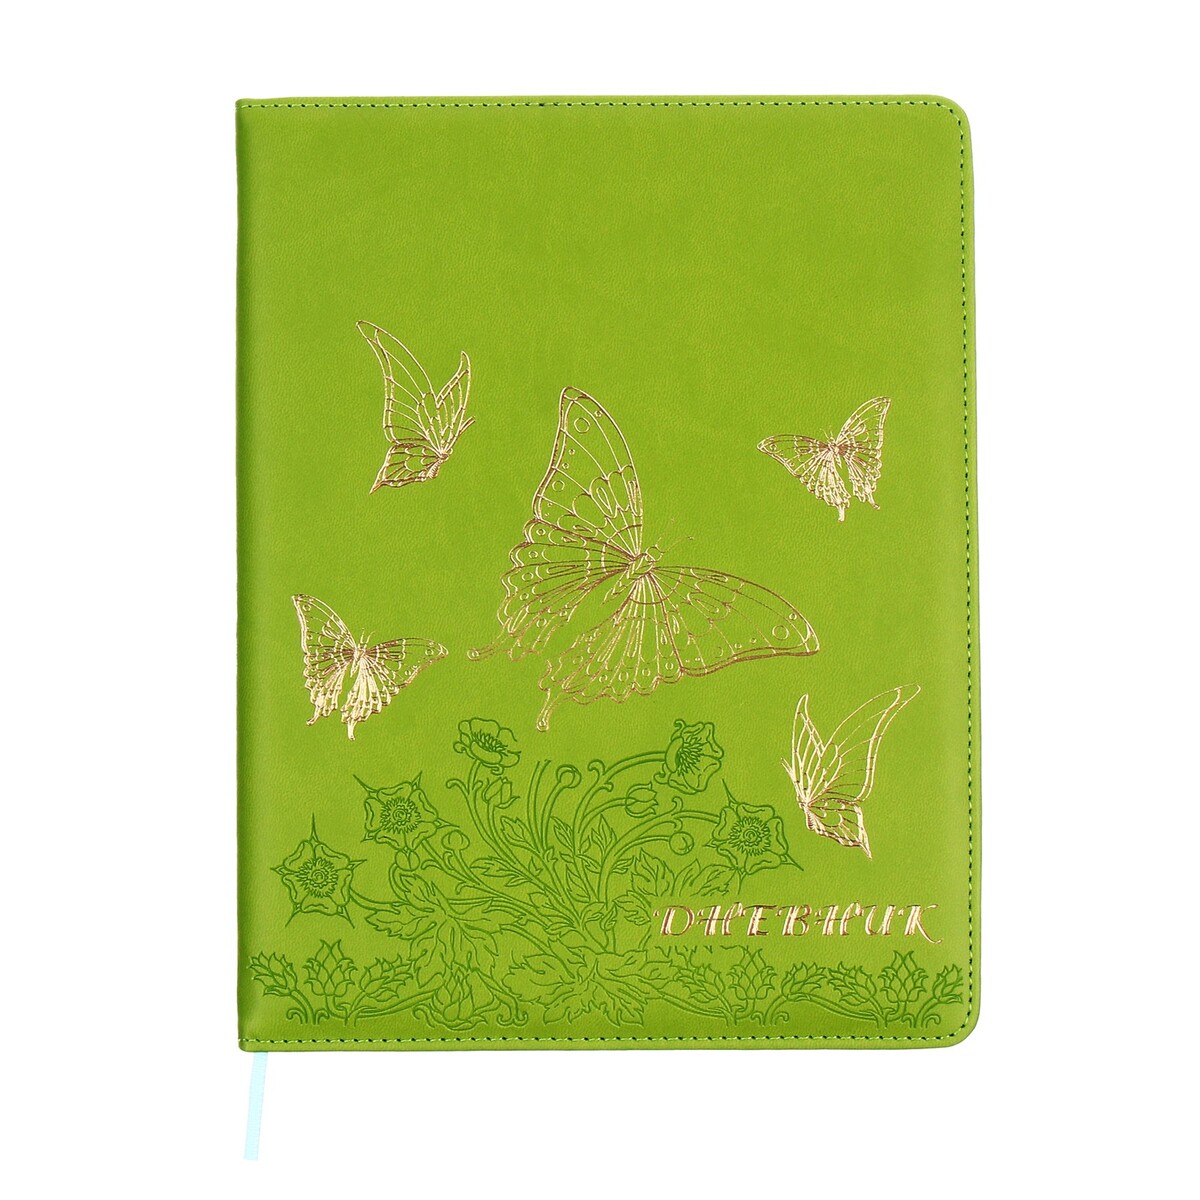 Дневник школьный, 5-11 класс, обложка пвх, бабочки, зеленый No brand 08209051 - фото 1